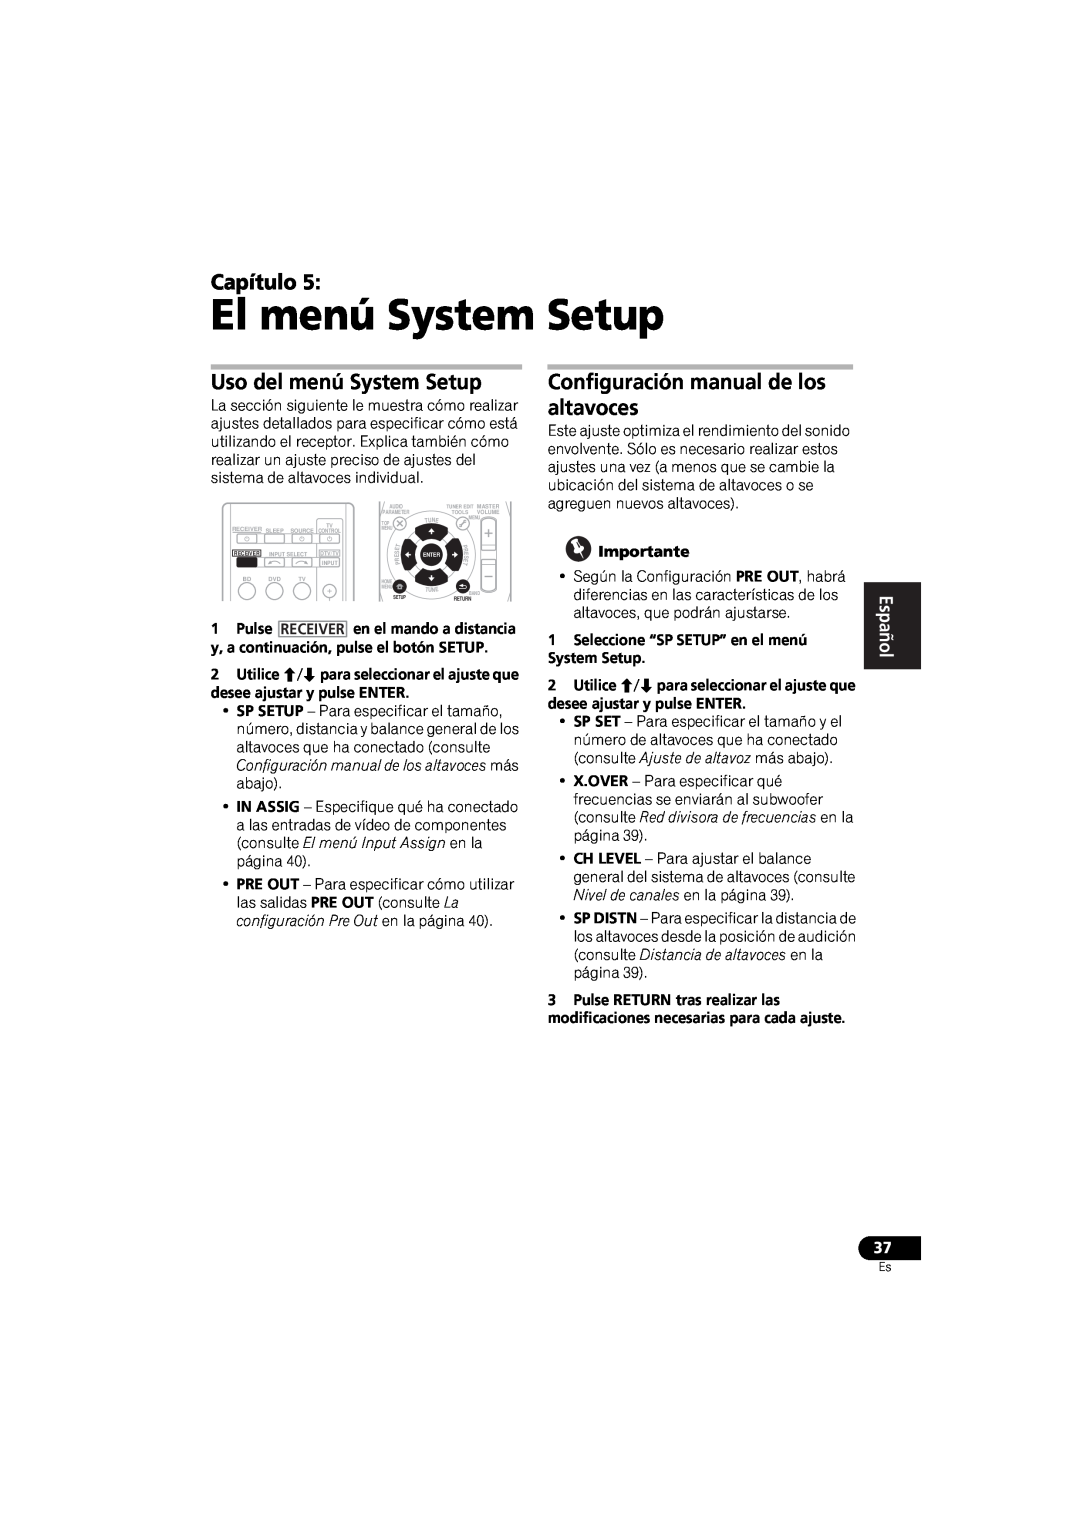 Pioneer VSX-520 El menú System Setup, Capítulo, Uso del menú System Setup, Configuración manual de los altavoces, English 